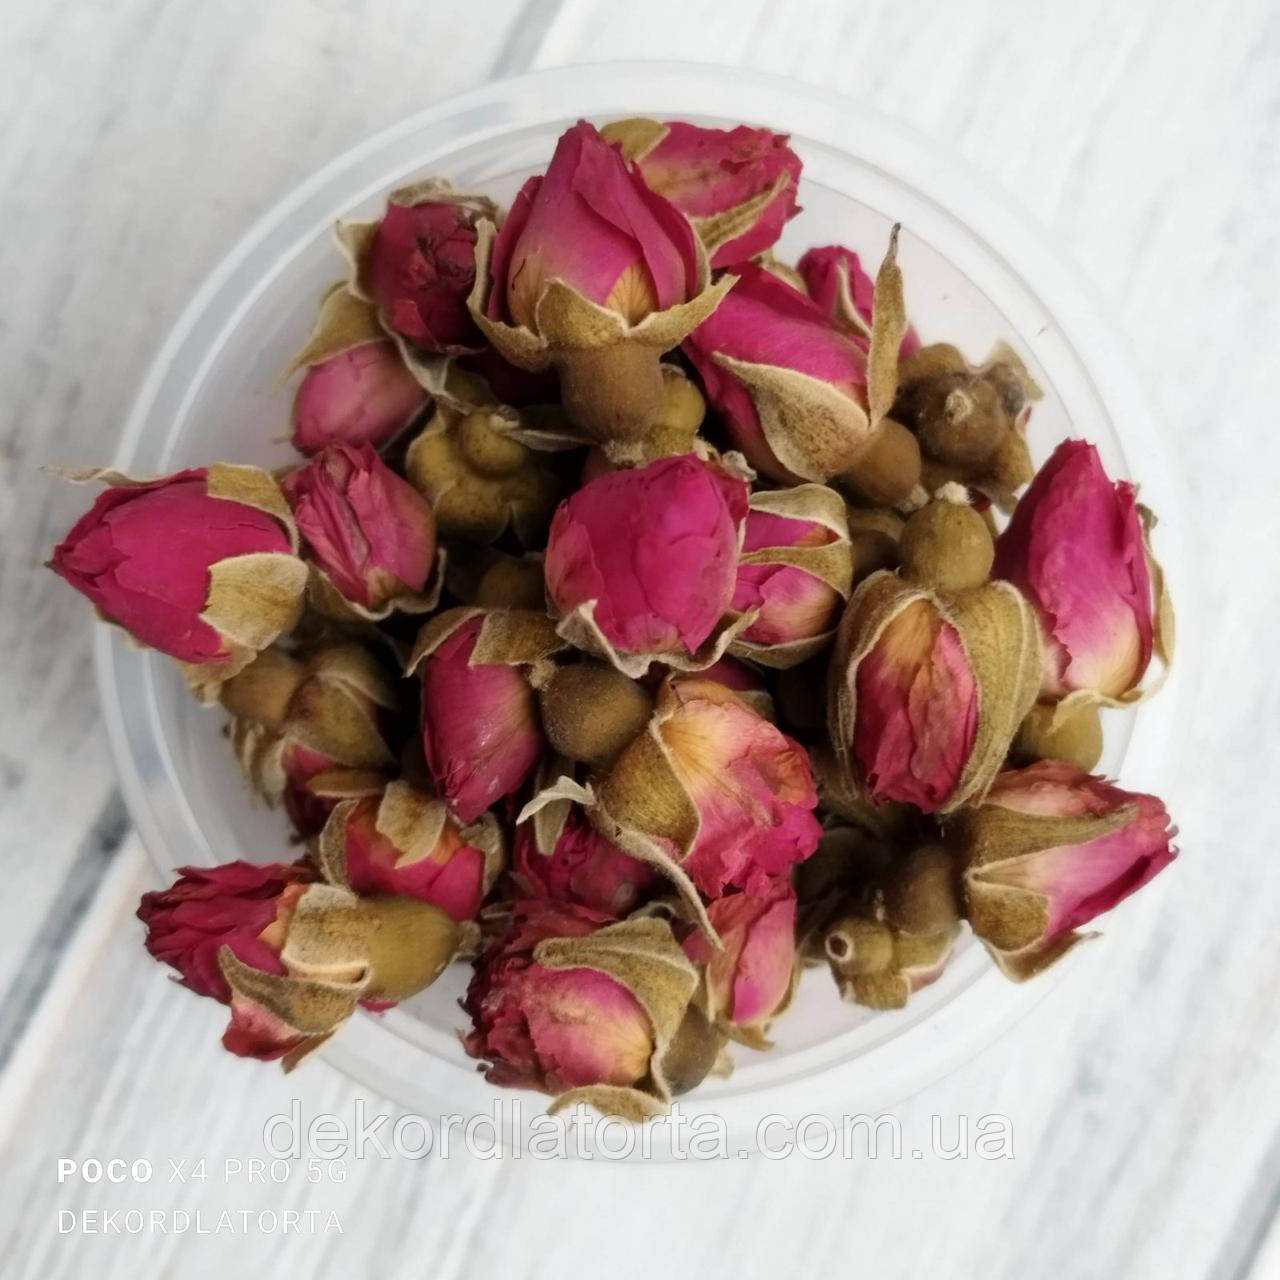 Бутони чайної троянди (роза), 1 кг